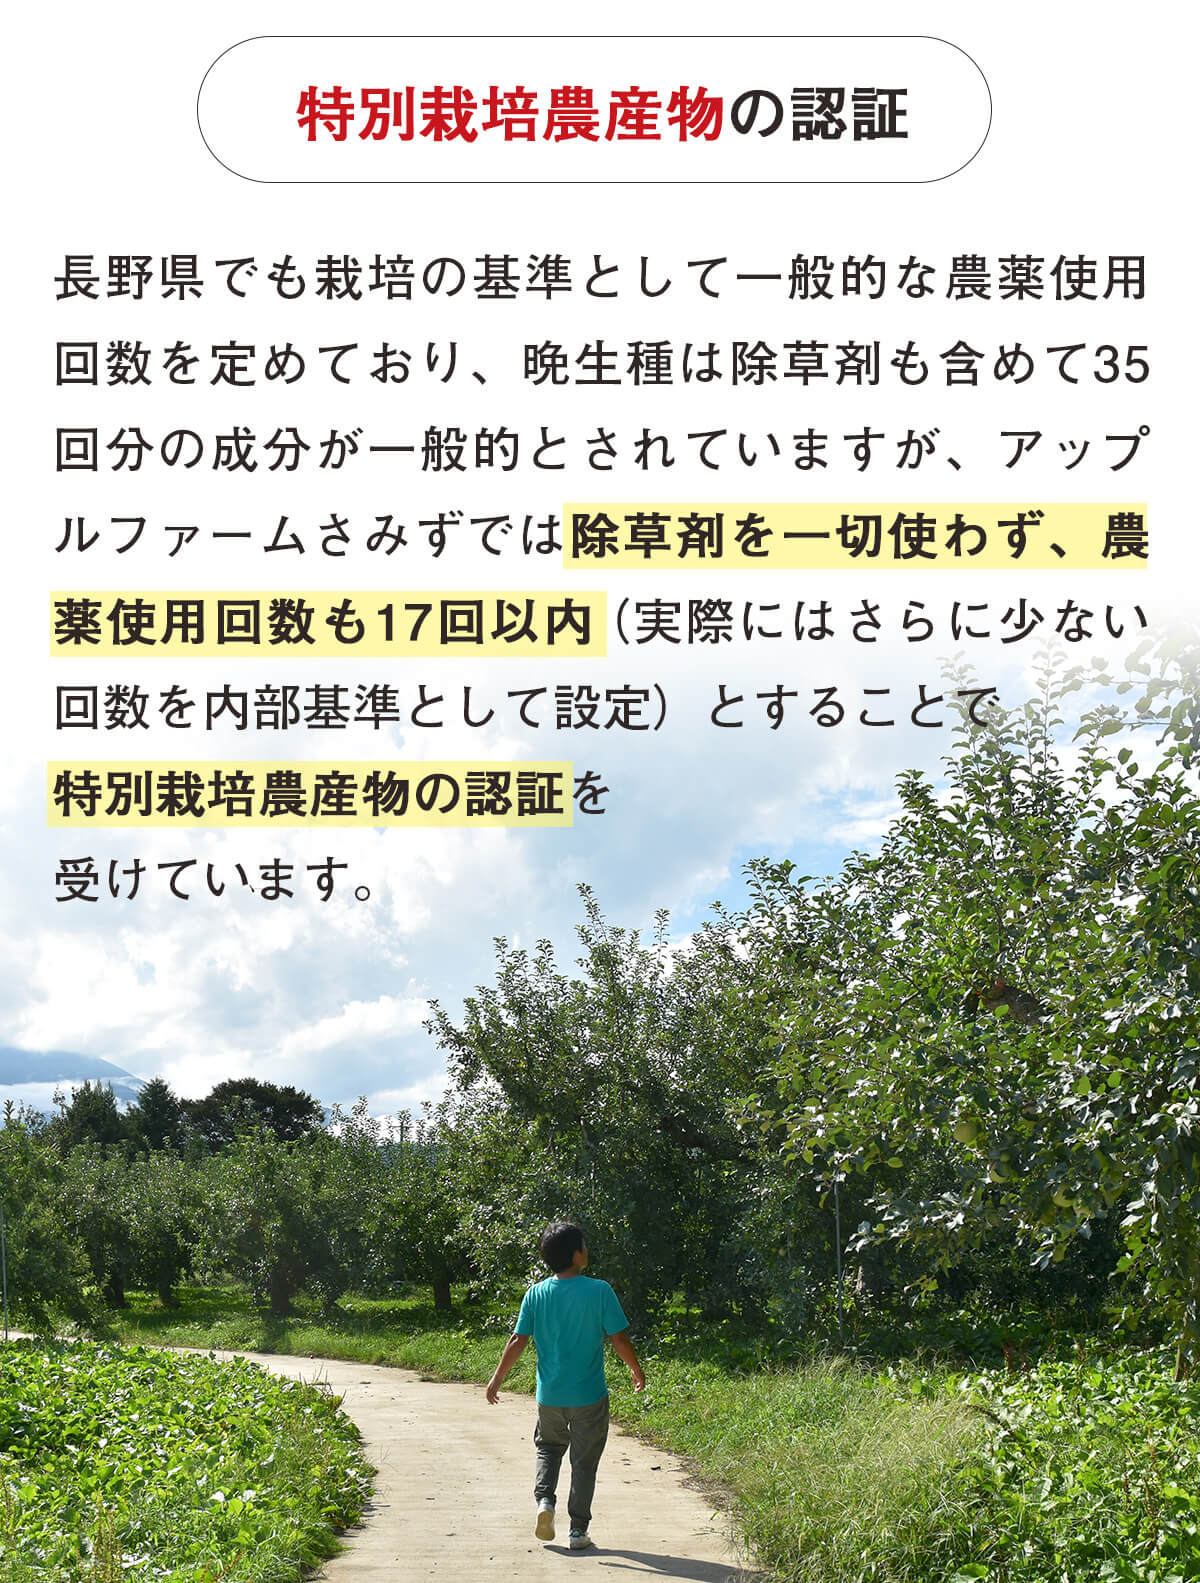 長野県の特別栽培農産物の認証を取得